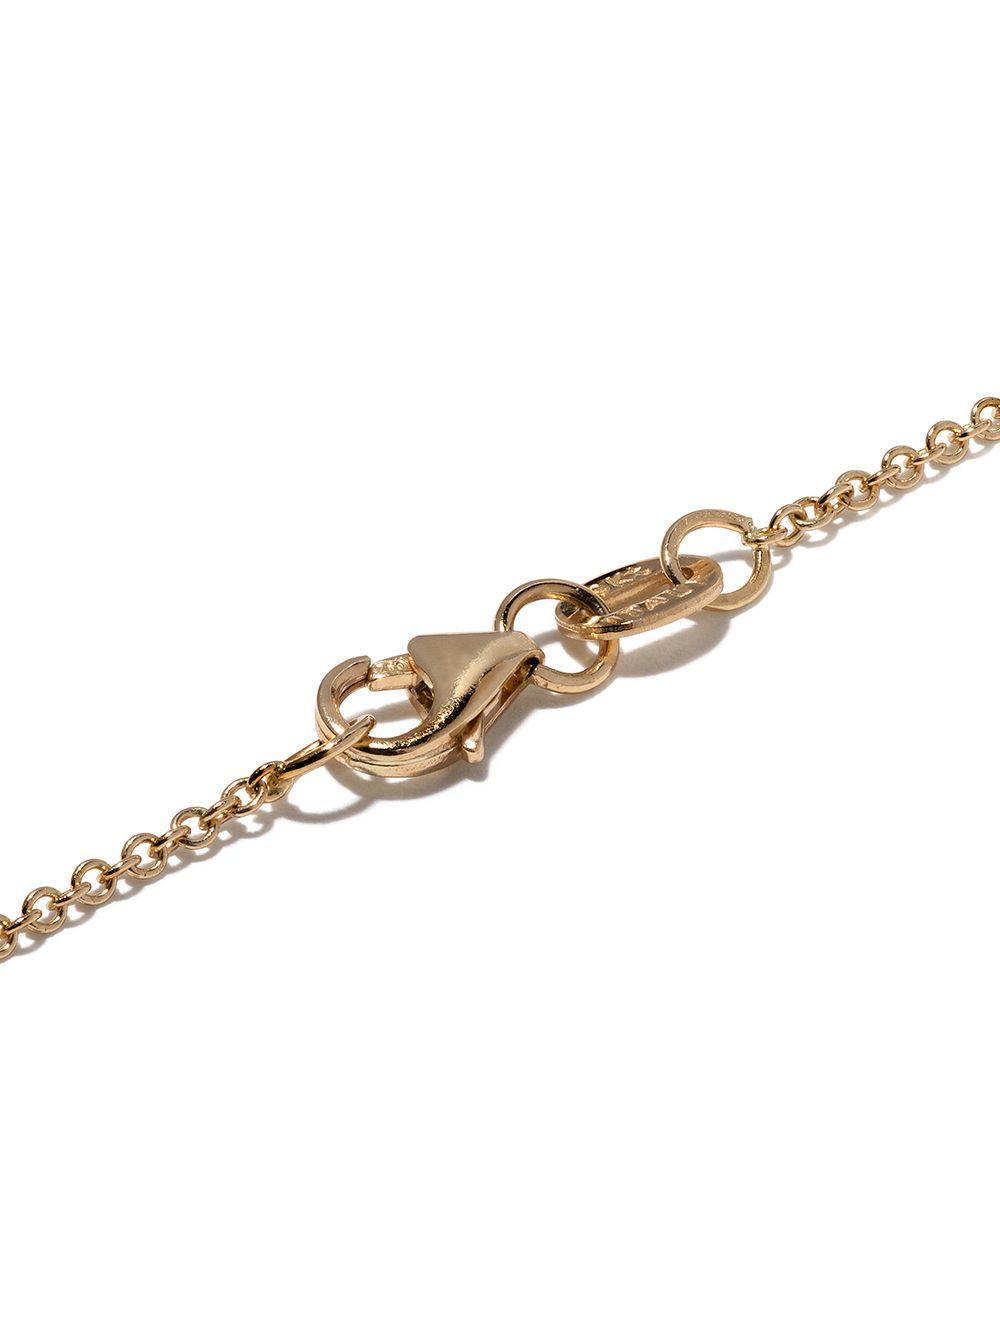 фото Lizzie mandler fine jewelry золотой браслет knife edge с бриллиантами